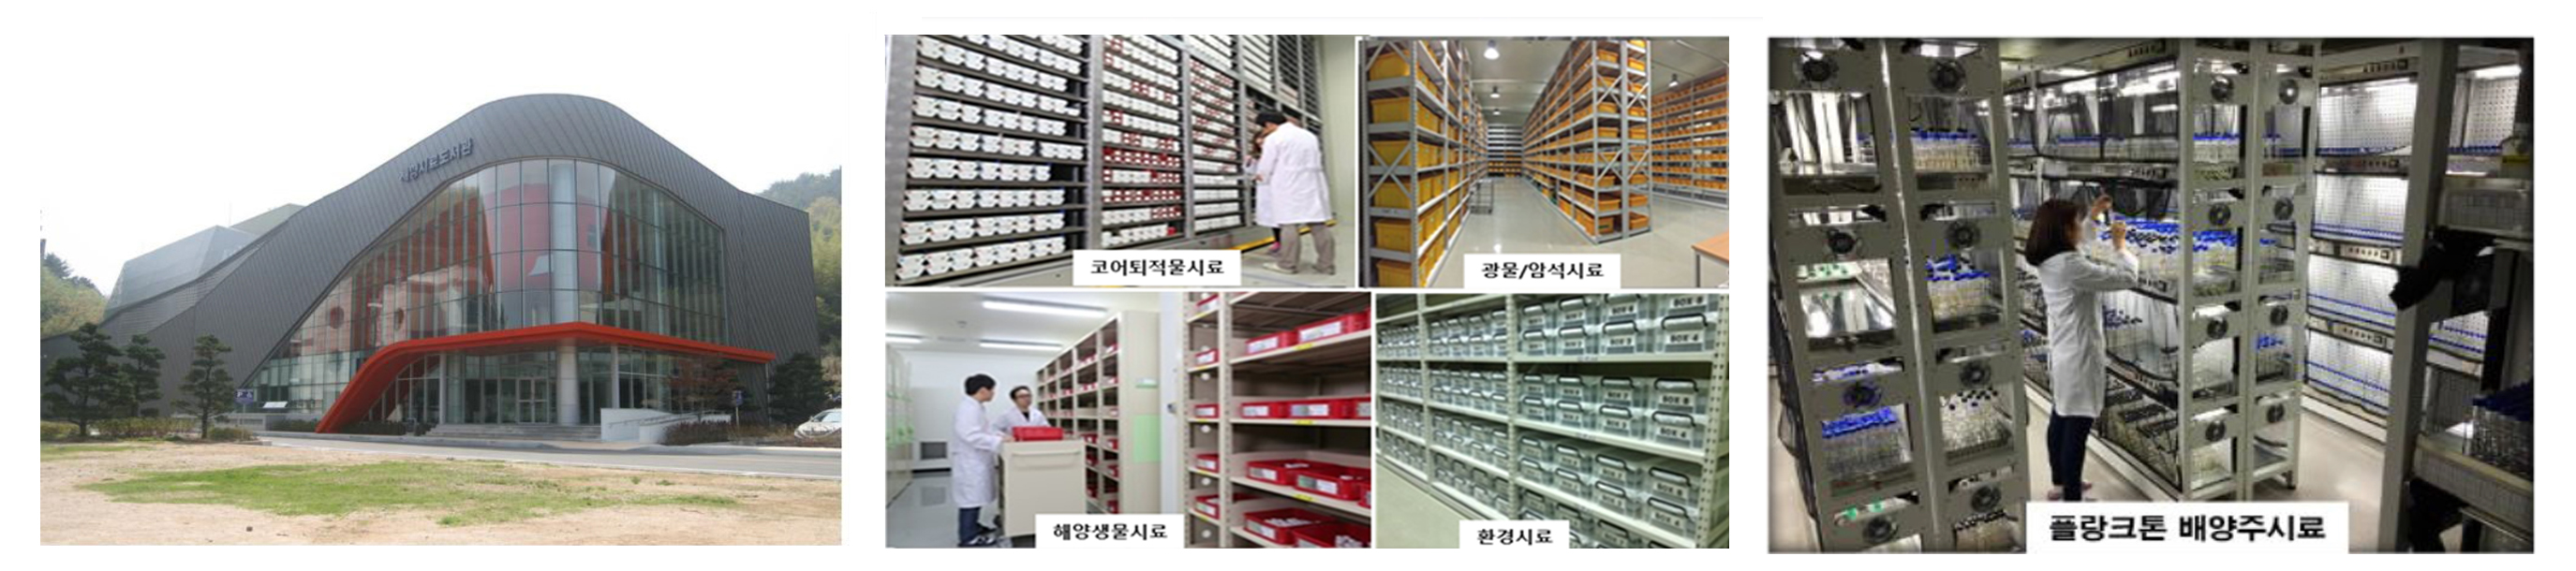 한국해양과학기술원 해양시료도서관 전경과 시료저장고